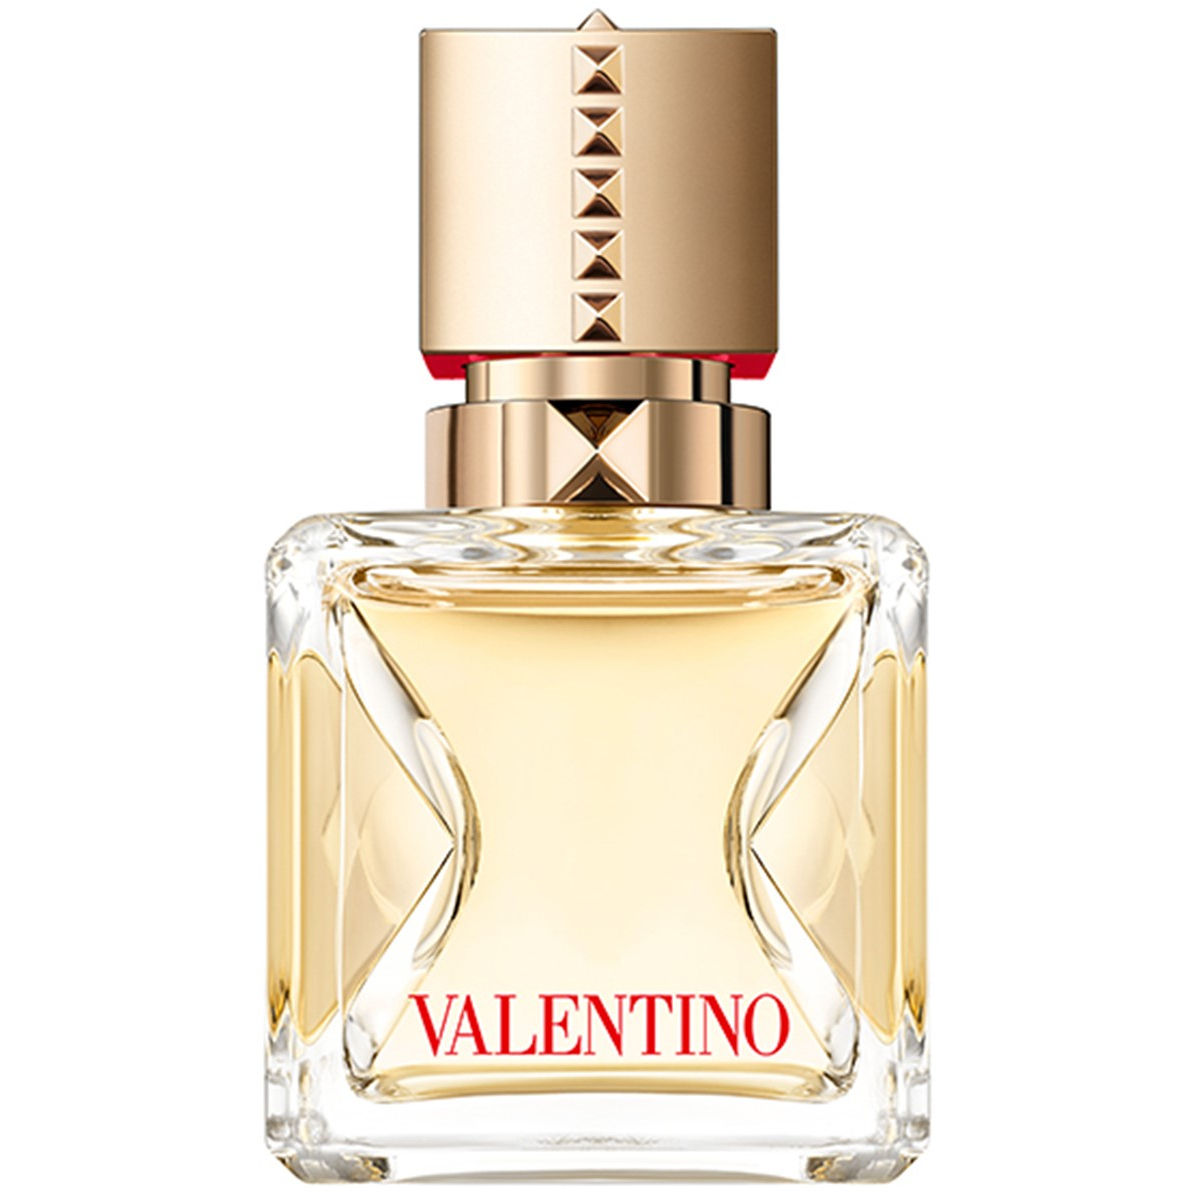 Valentino Voce Viva Eau de parfum spray 30 ml